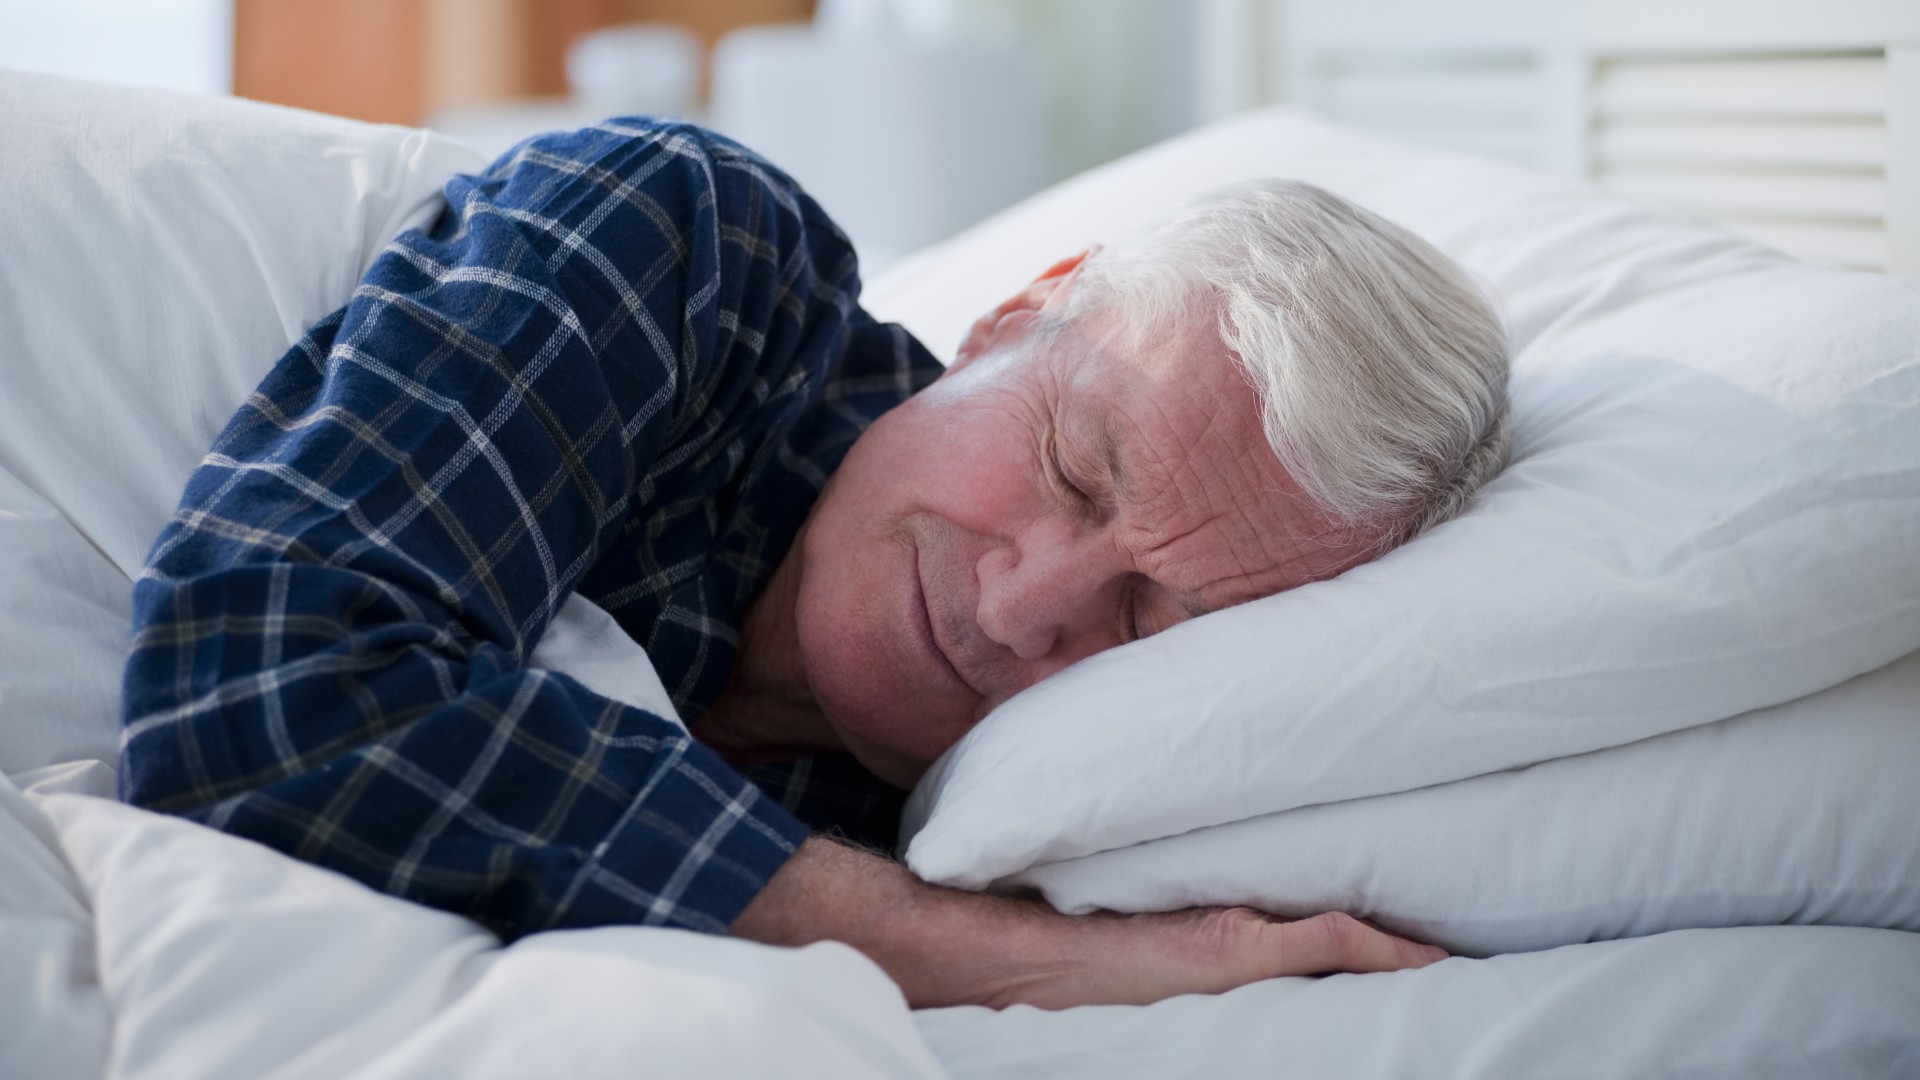 An elderly man sleeps in bed